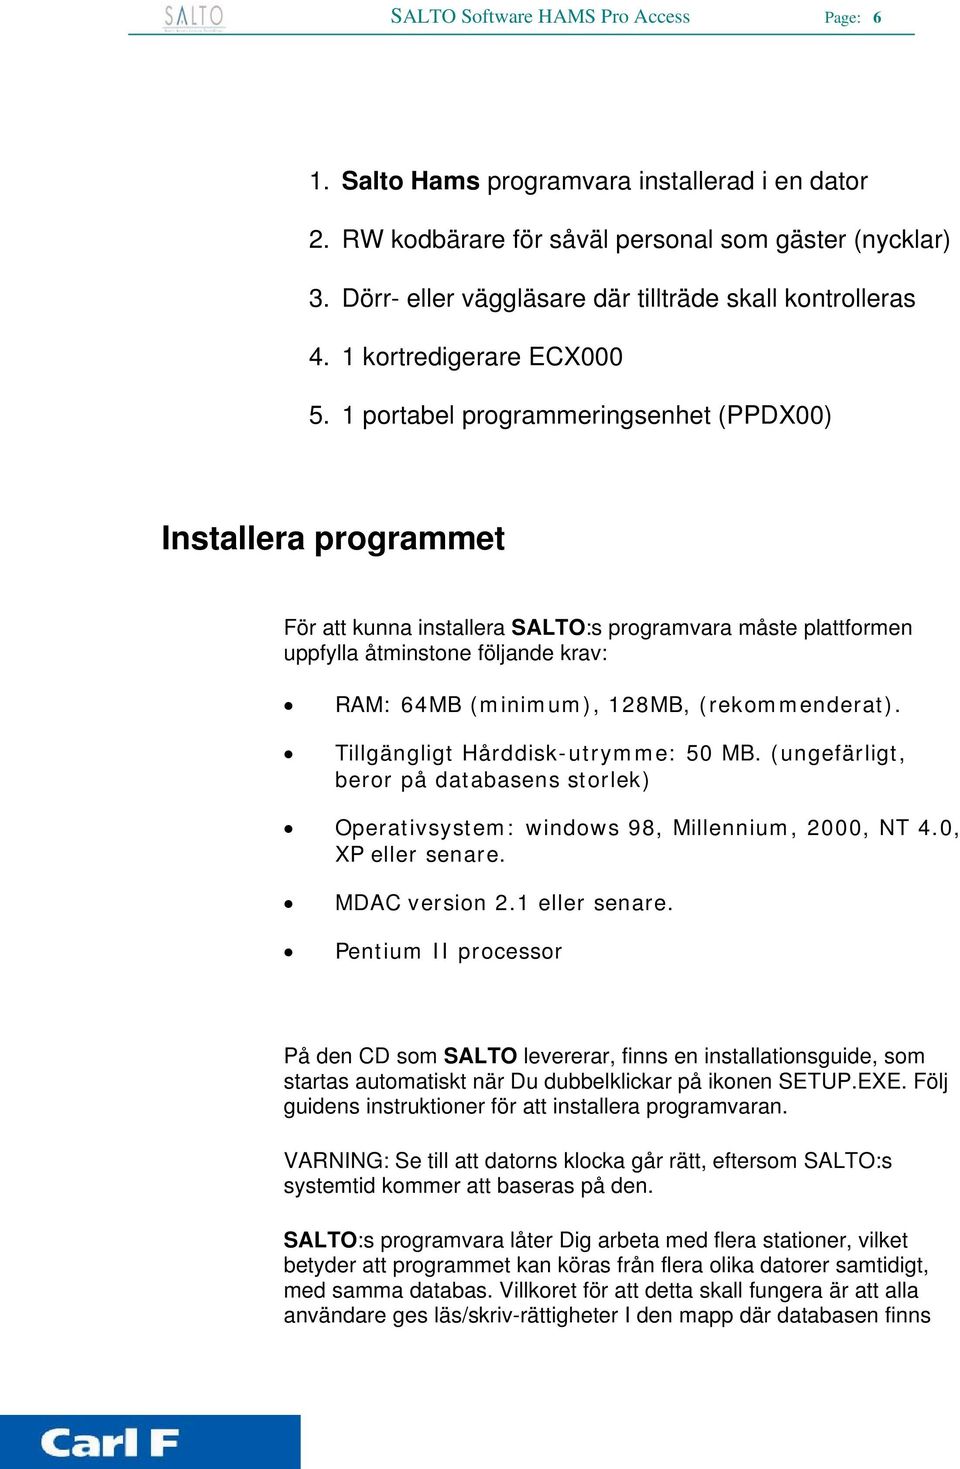 1 portabel programmeringsenhet (PPDX00) Installera programmet För att kunna installera SALTO:s programvara måste plattformen uppfylla åtminstone följande krav: RAM: 64MB (minimum), 128MB,